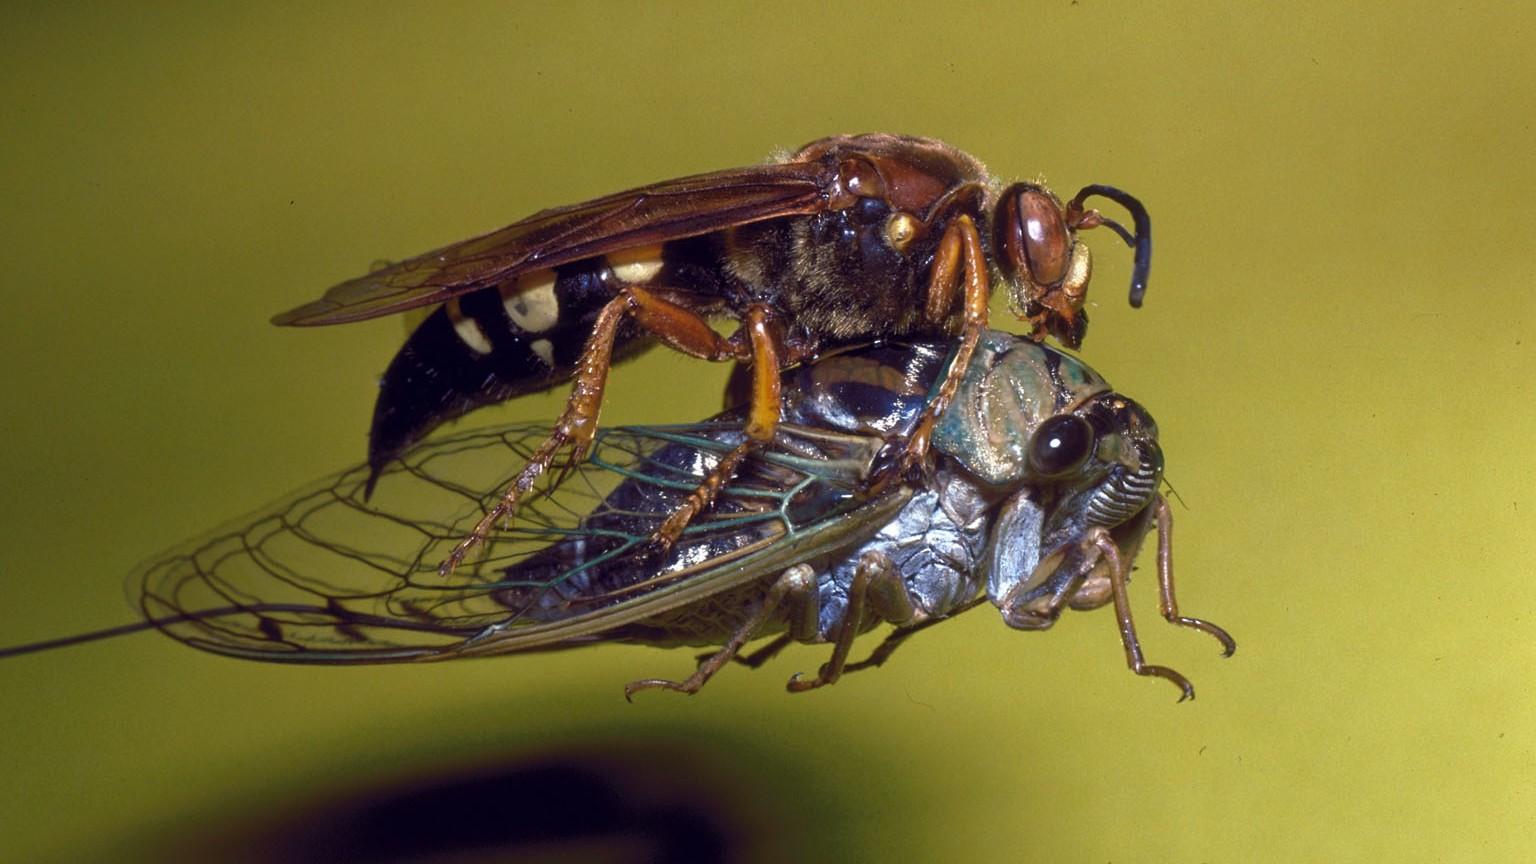 cicada killer wasp with prey